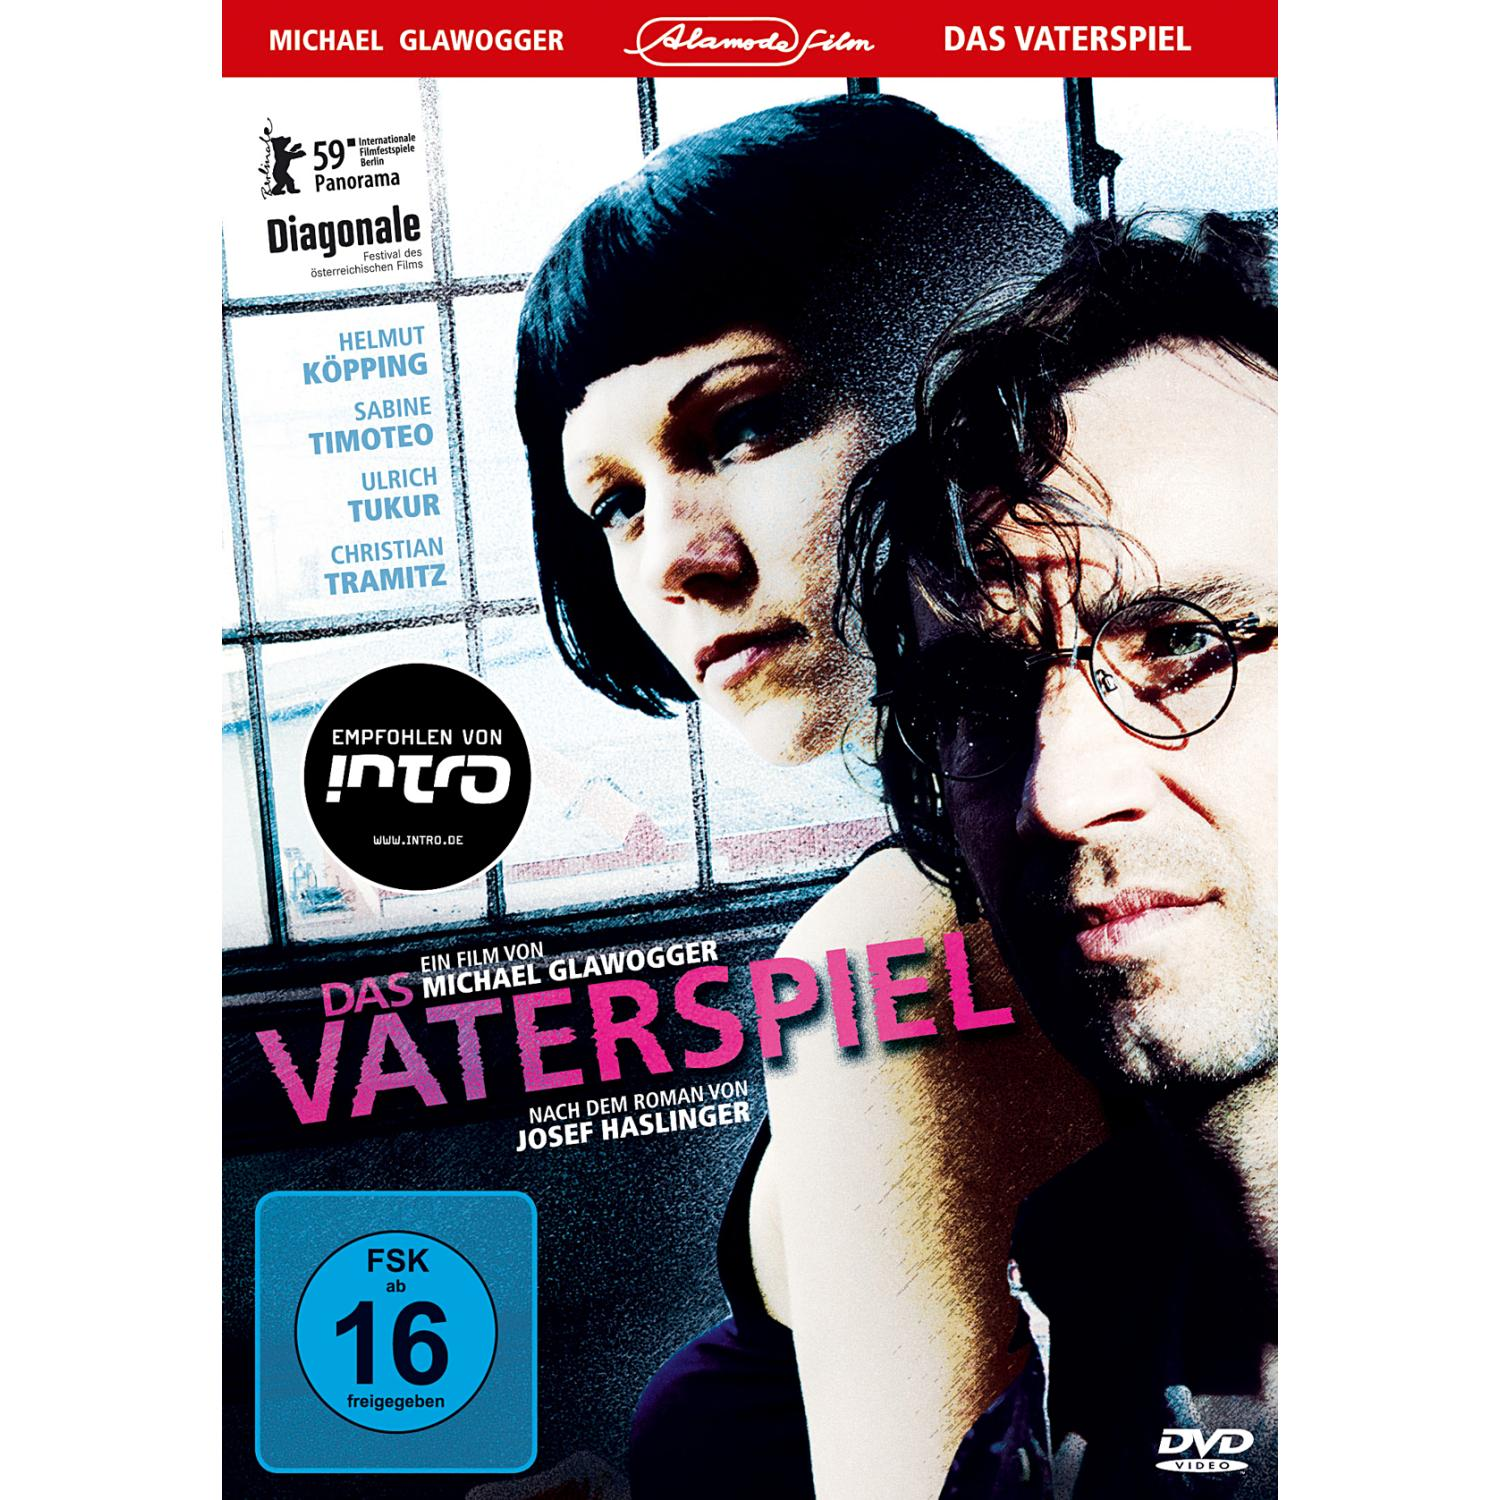 DAS VATERSPIEL DVD